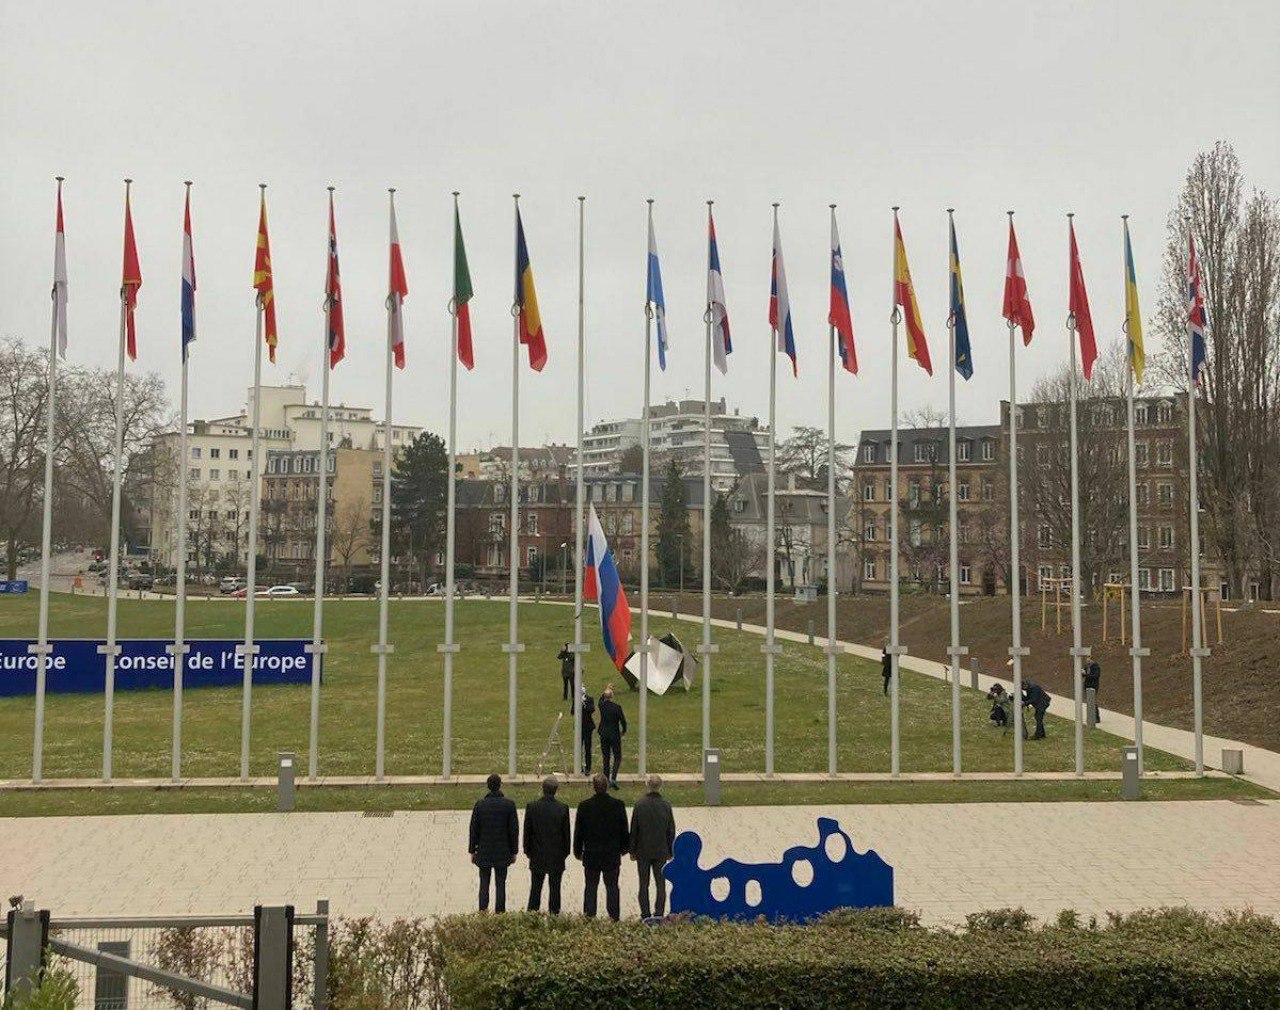 Бувай, немита росіє - прапор рф зняли з флагштока перед будівлею Ради Європи